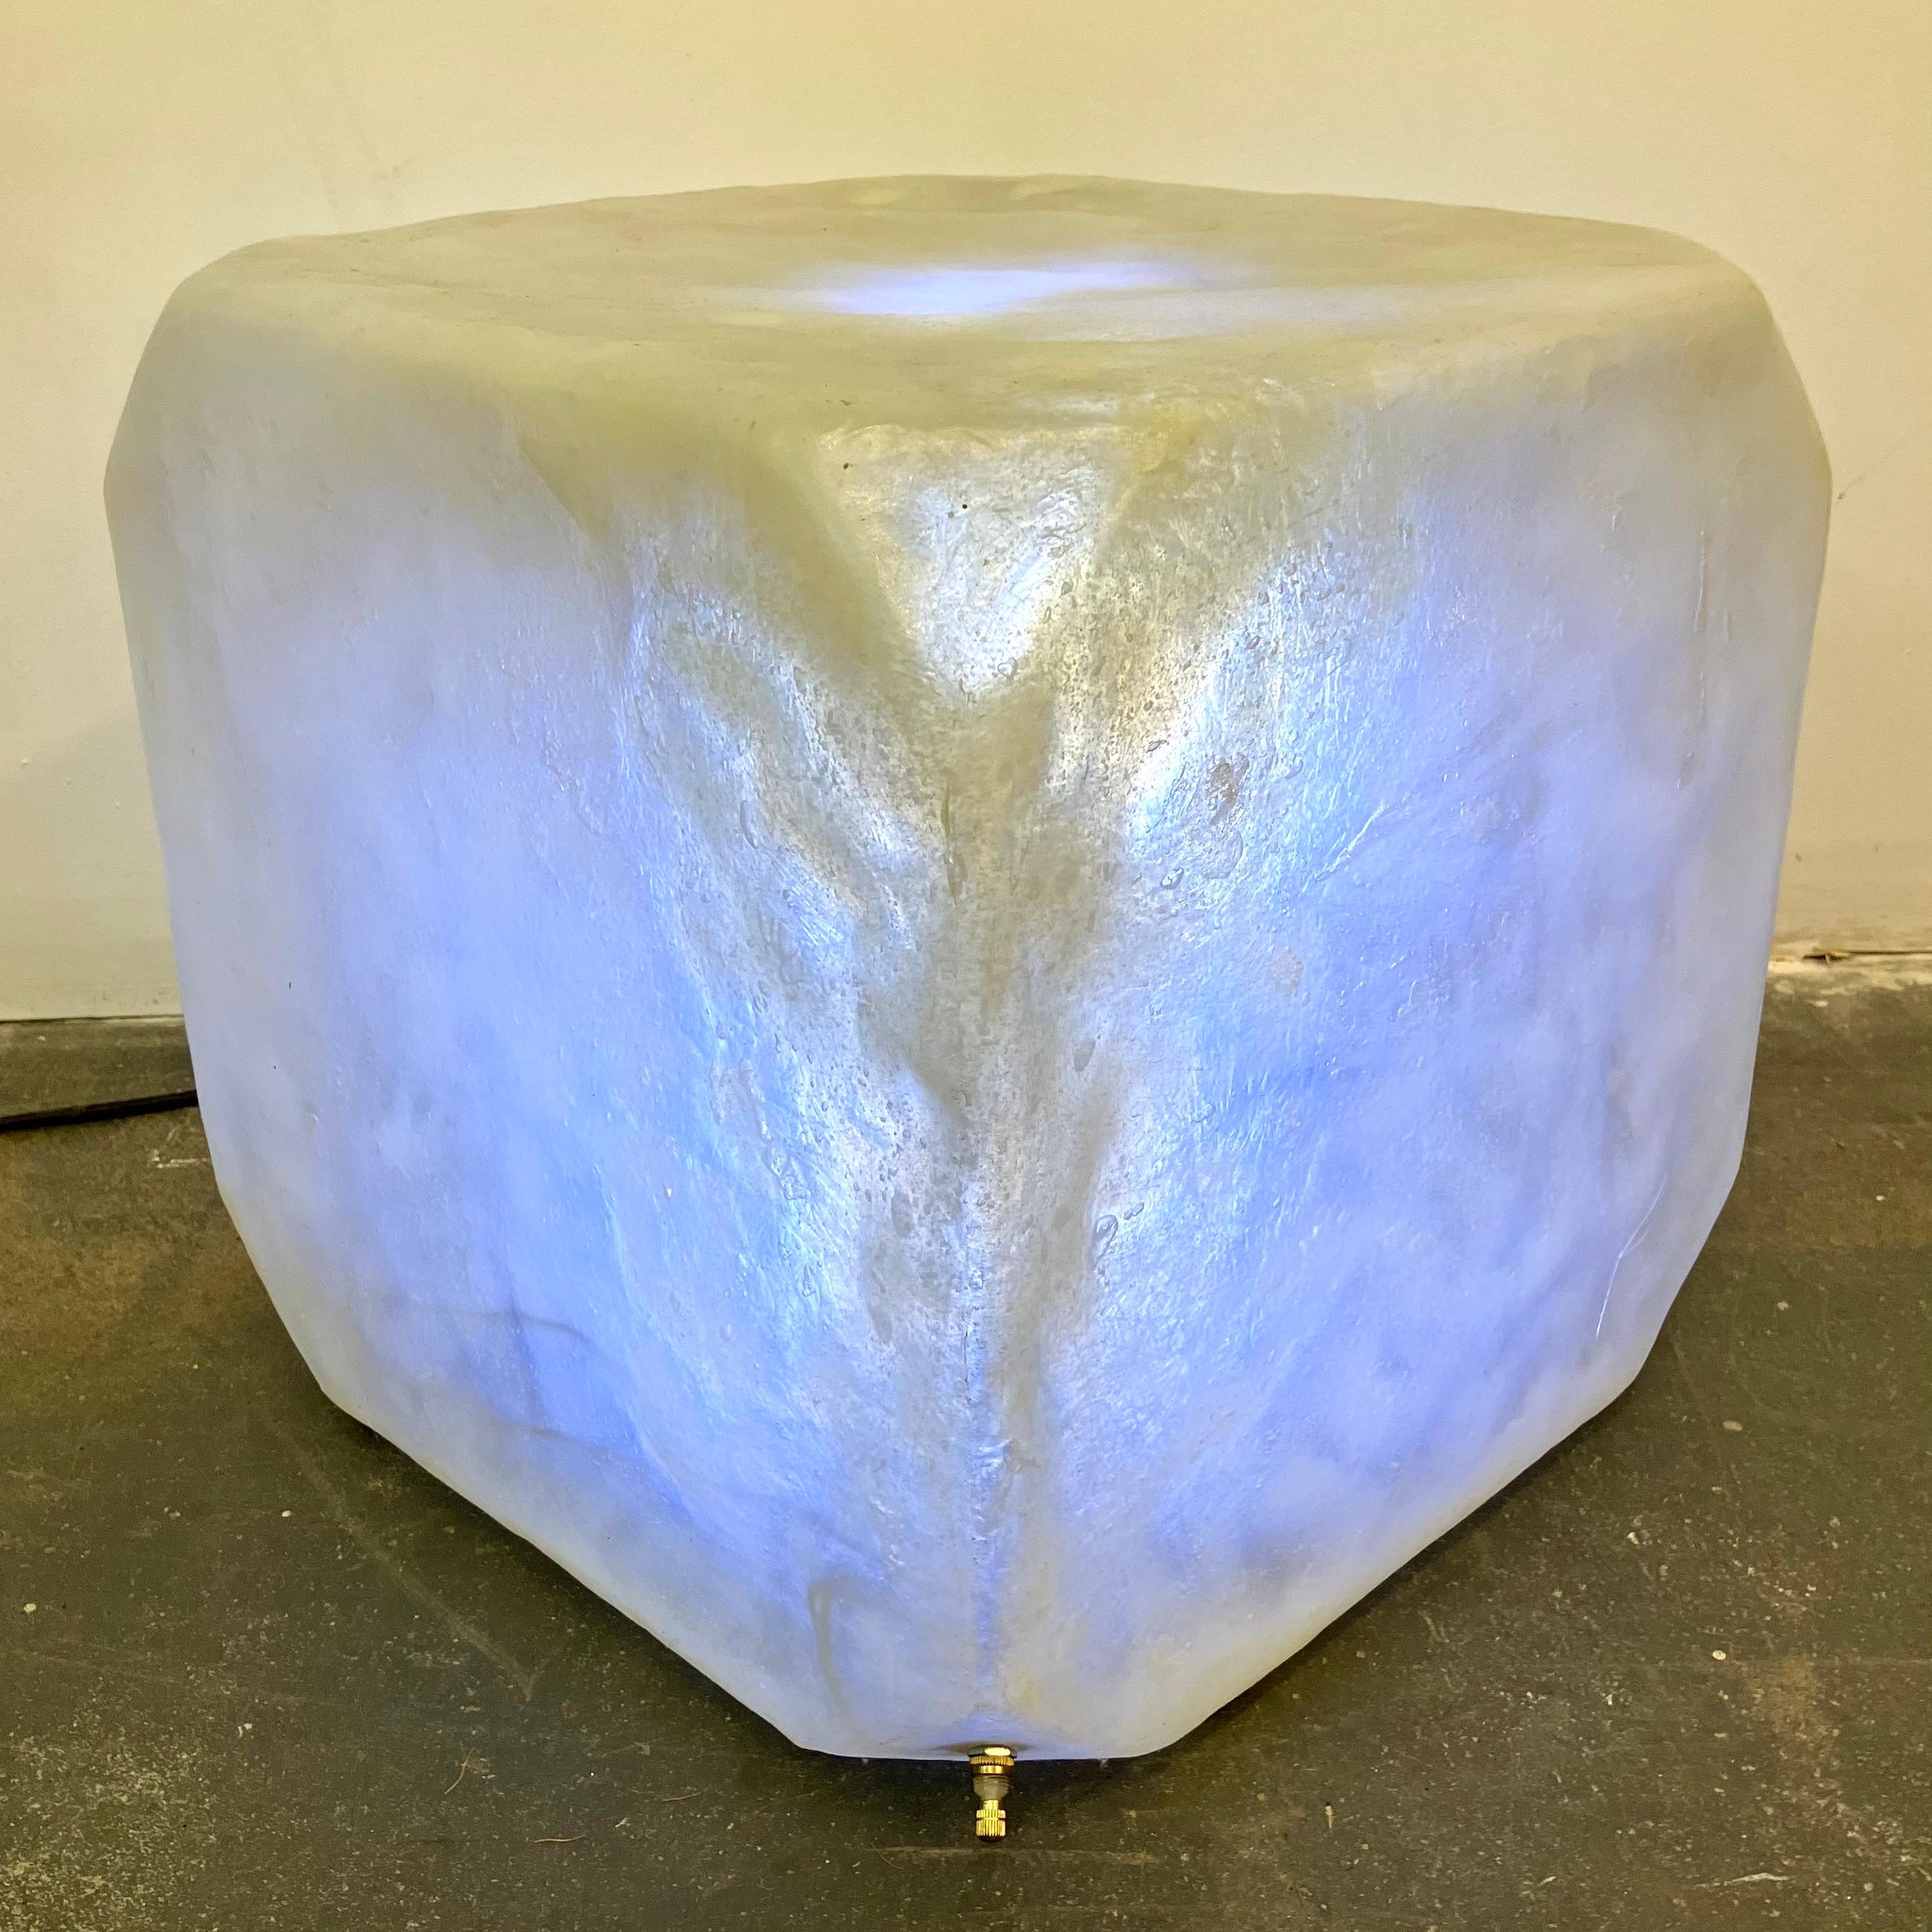 Fantastique table cubique en fibre de verre transparente moulée des années 1960, avec une surface texturée naturelle et une ampoule interne. Peut également servir de grande lampe de table ou de piédestal. Fabricant inconnu, mais pièce marquée '25'.